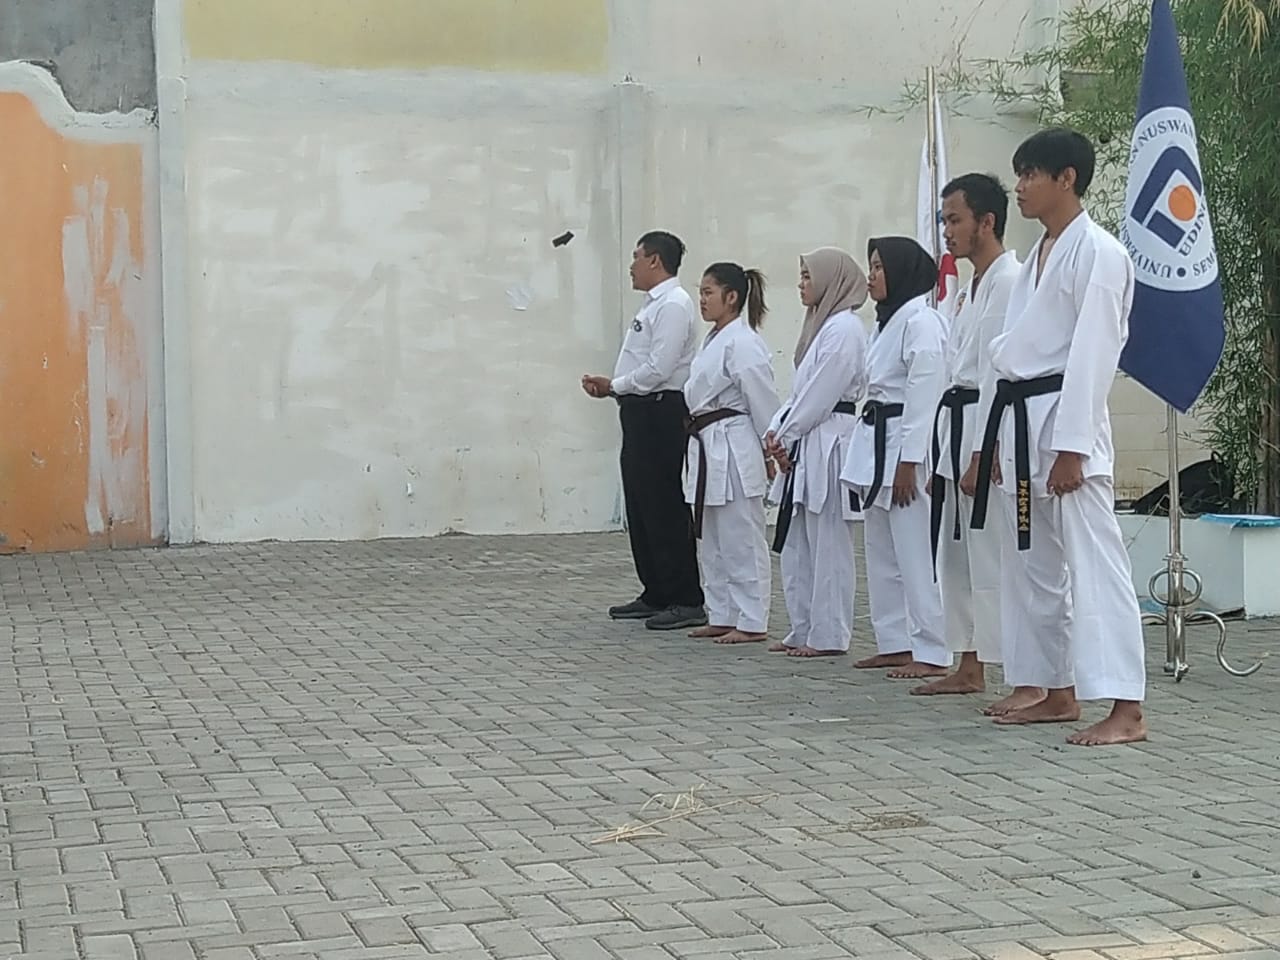 sambutan dari pembina karate